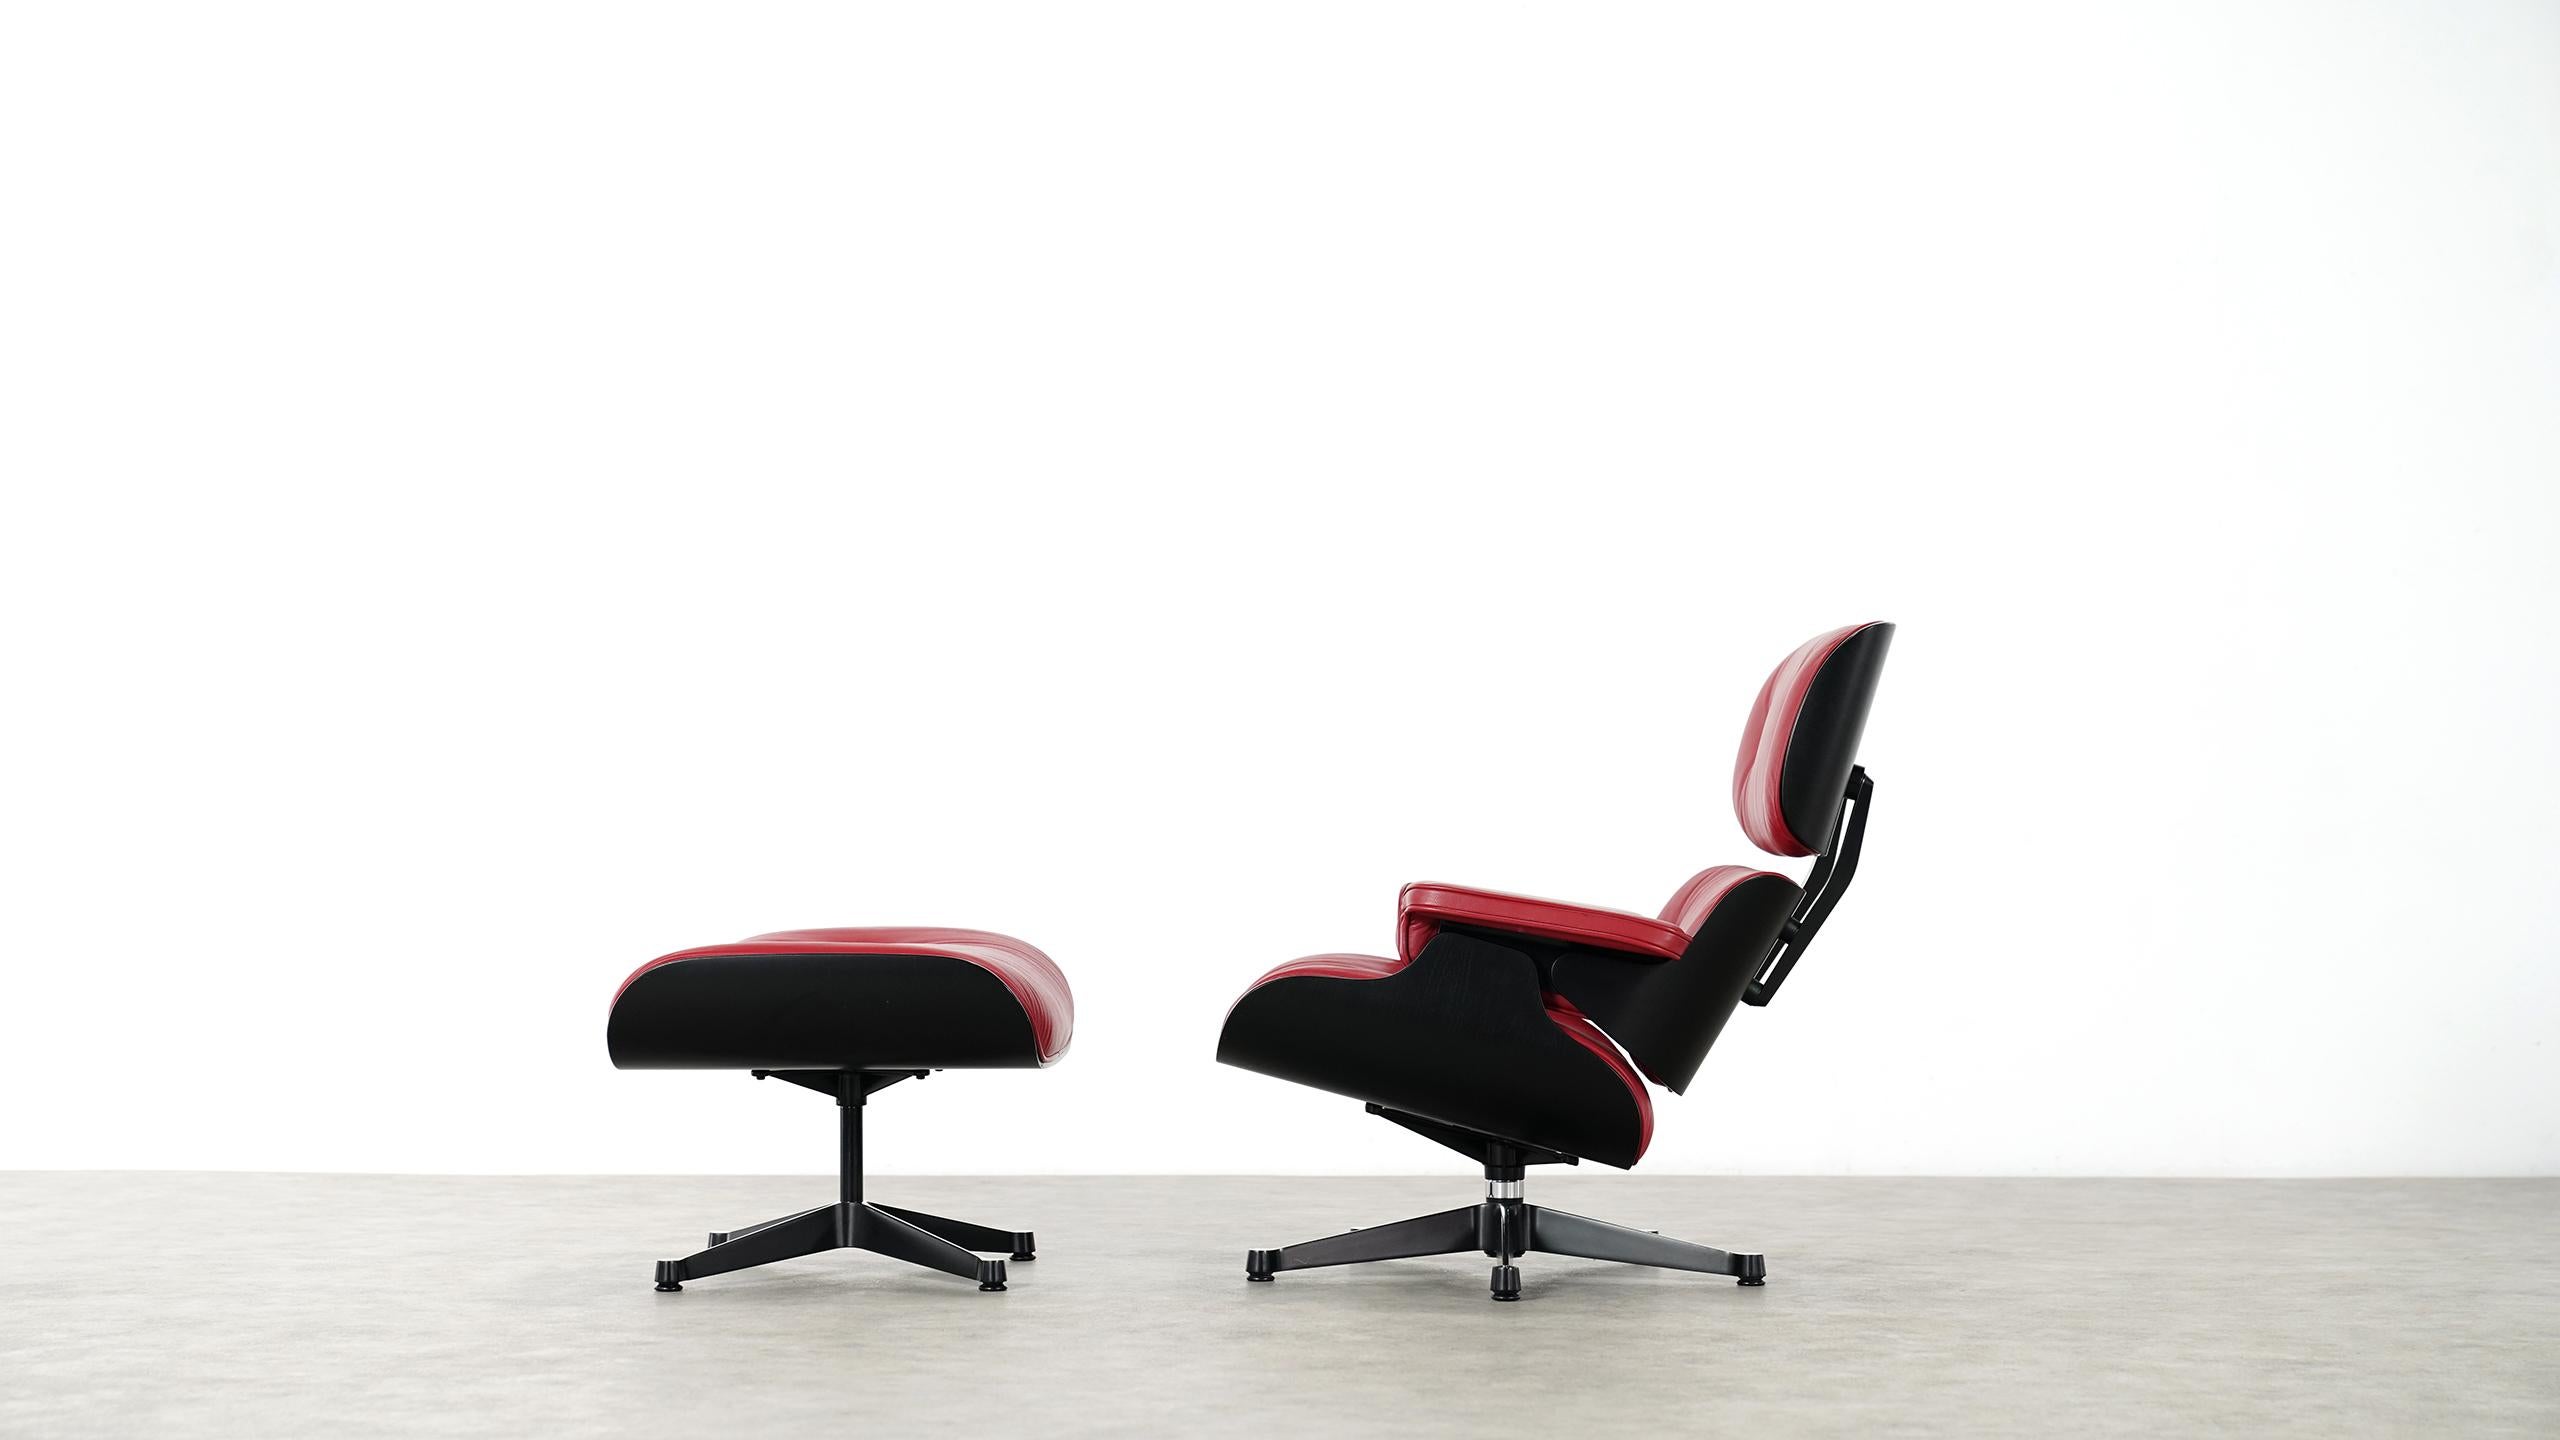 Atemberaubend schöner Charles Eames Lounge Chair mit Ottomane von Vitra. 
Mit geschliffenen schwarzen Schalen:: so dass die Holzmaserung spürbar ist und sehr weichen roten Lederpolstern. 

Sehr guter Zustand!

Sowohl der Stuhl als auch die Ottomane